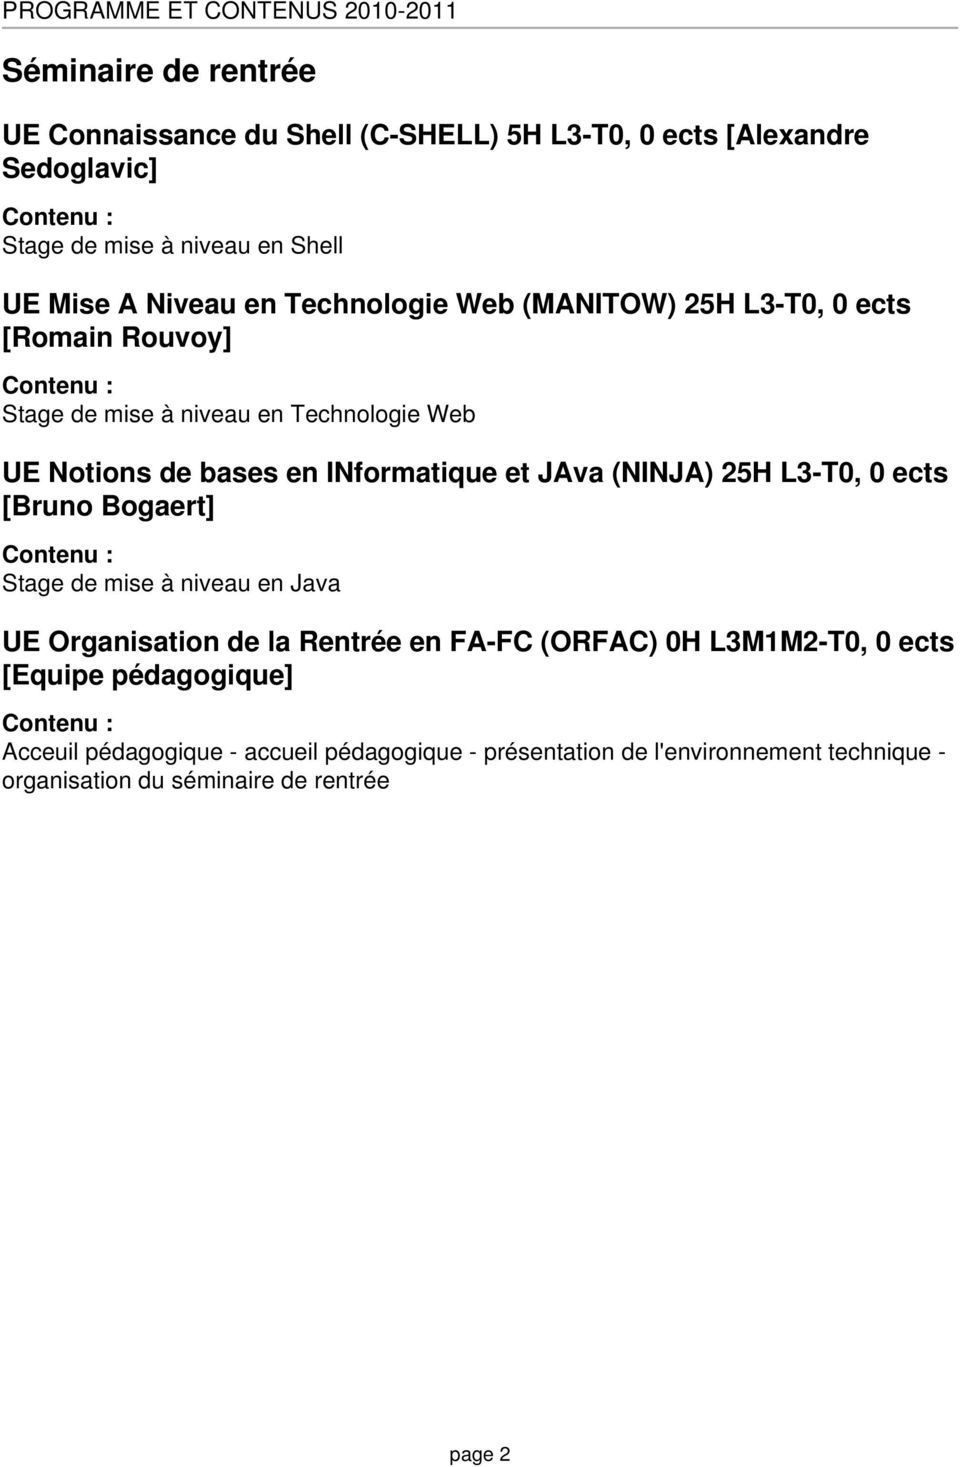 INformatique et JAva (NINJA) 25H L3-T0, 0 ects [Bruno Bogaert] Stage de mise à niveau en Java UE Organisation de la Rentrée en FA-FC (ORFAC) 0H L3M1M2-T0,